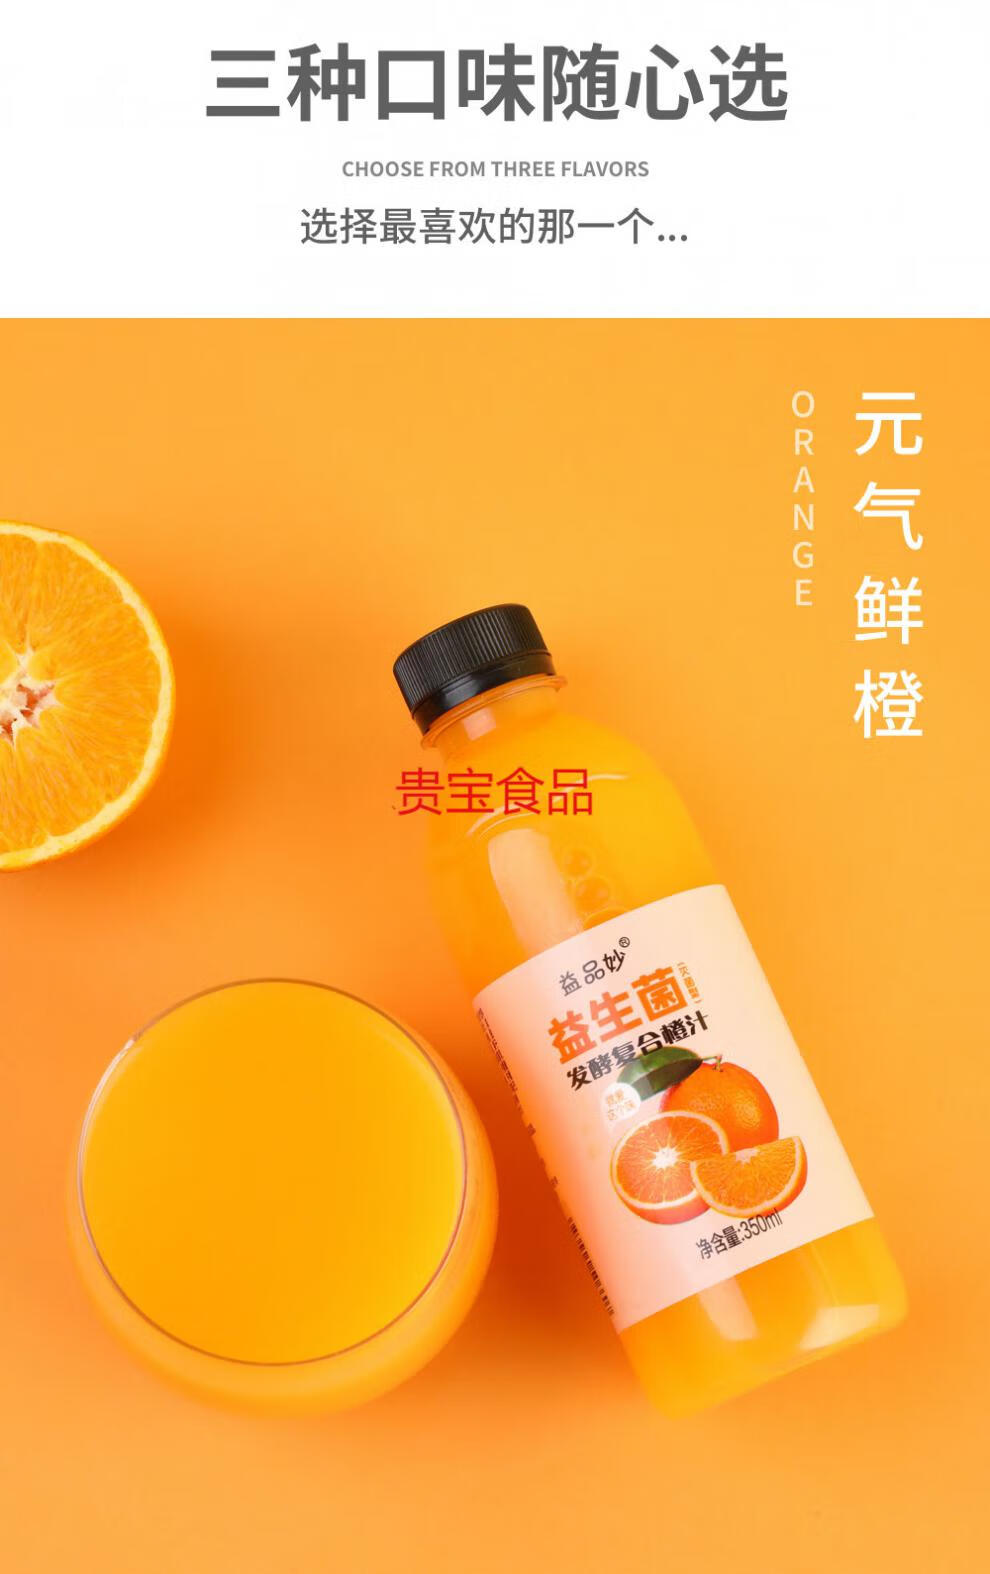 果汁饮料芒果鲜橙350ml猕猴桃小瓶混装整箱批益生菌6瓶三种口味混装